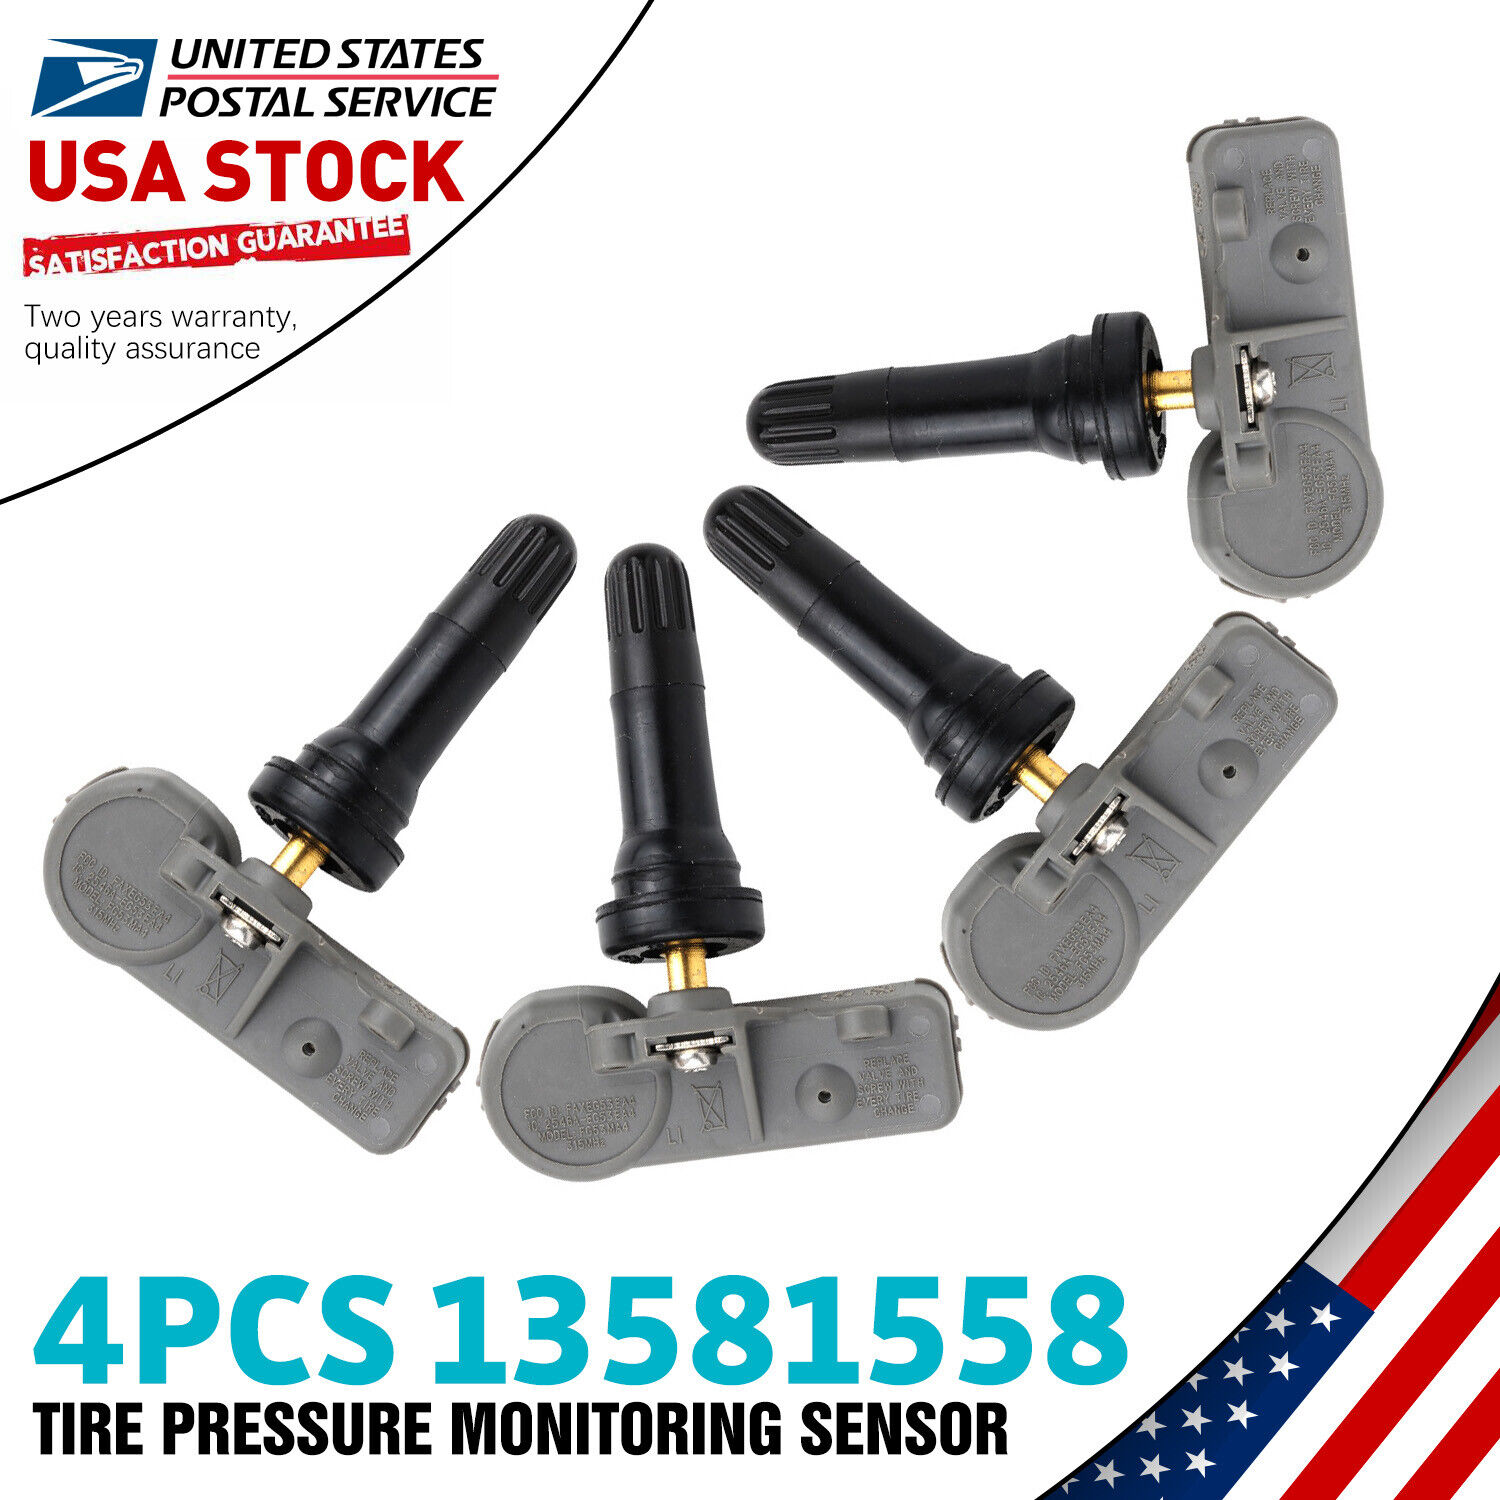 For 2012-2017 Buick Verano Tire Pressure Monitoring Sensors OE 13581558 4PCS NEW